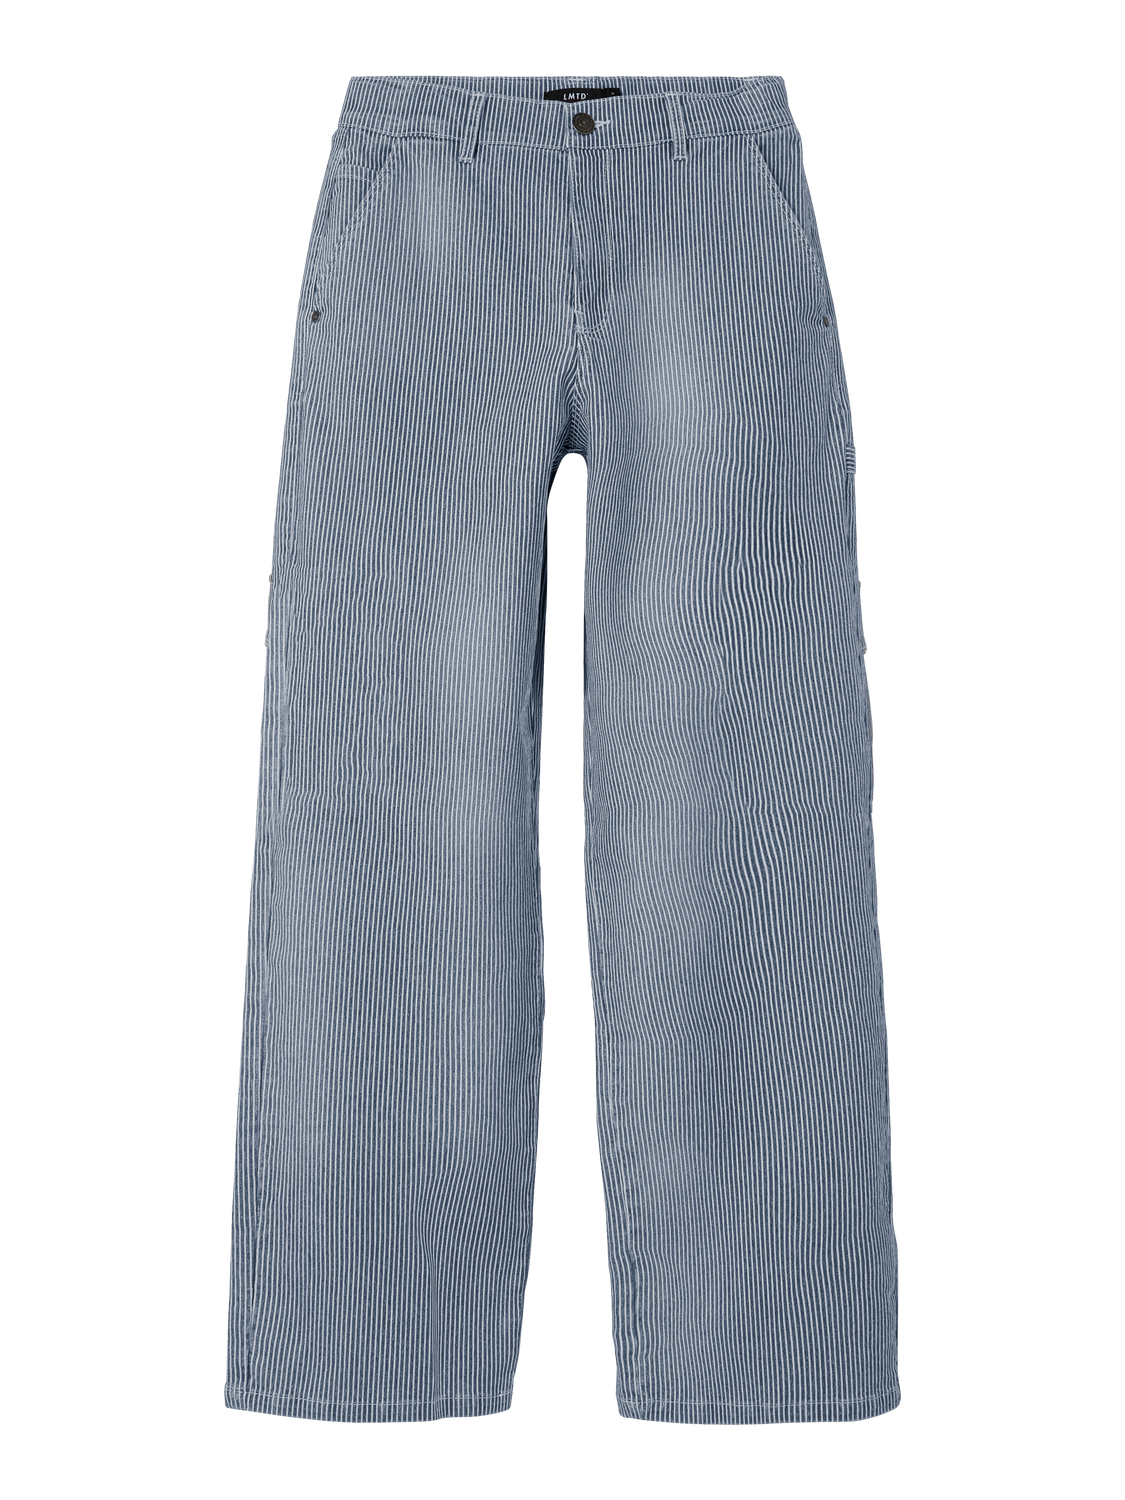 NLFRICTE Trousers - Dress Blues